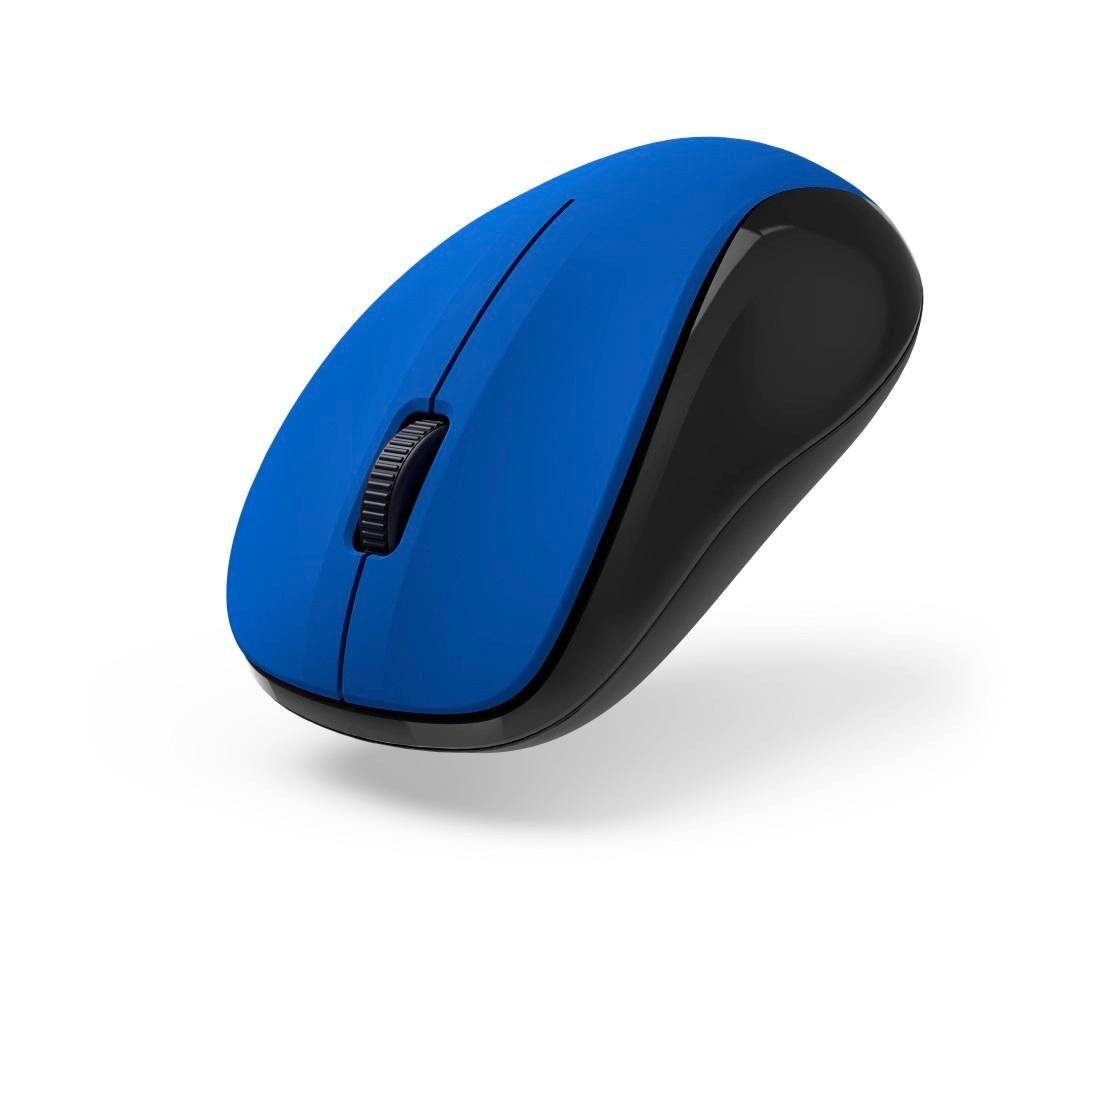 Funkmaus "MW-300 Hama V2", Maus 3 blau Optische Empfänger Tasten geräuschlos, USB